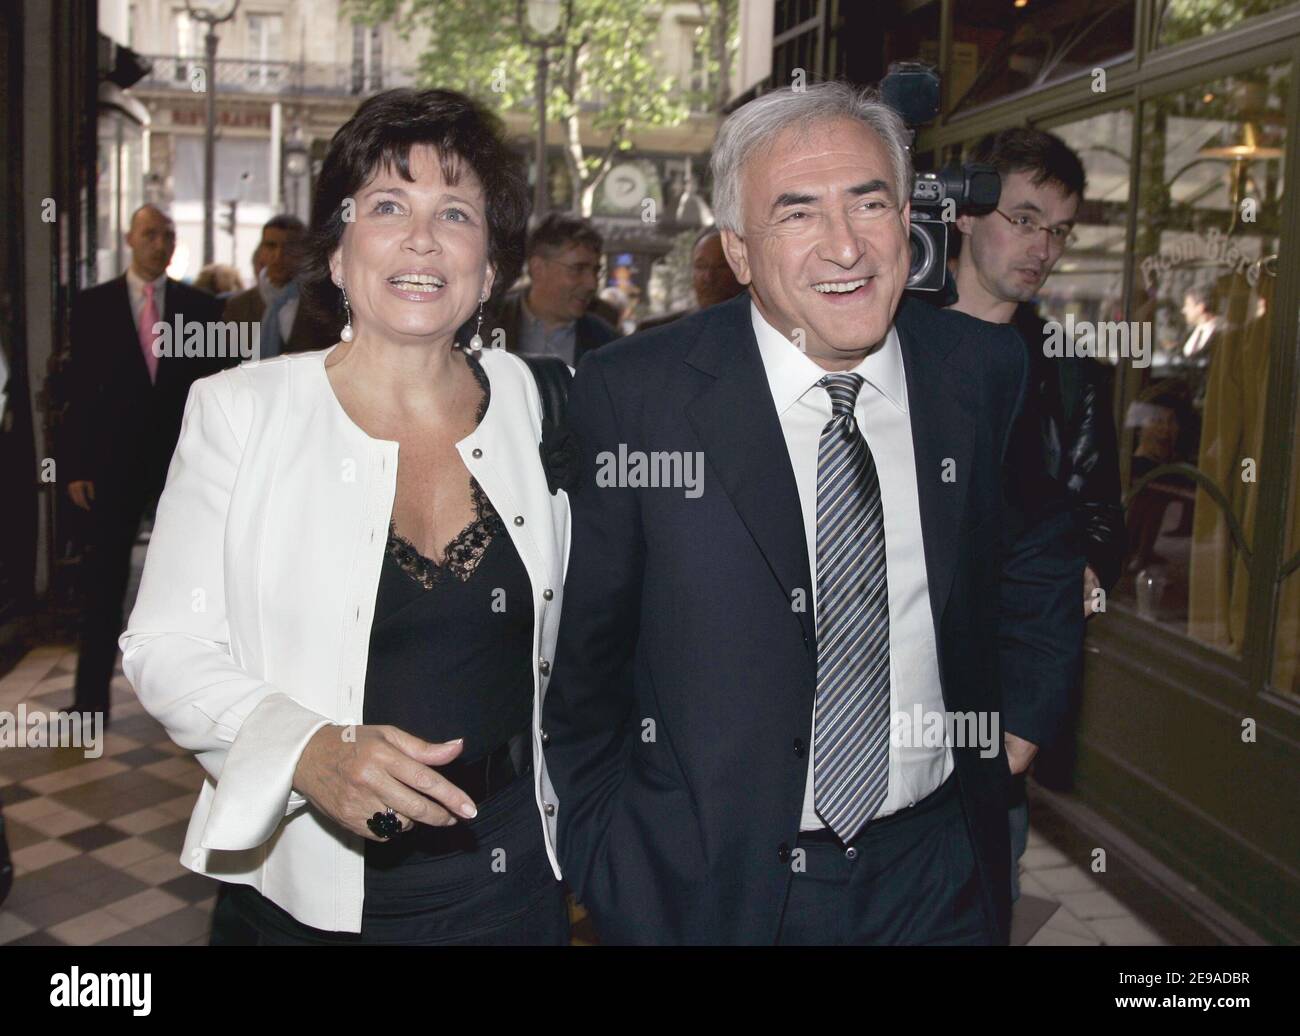 Le socialiste français Dominique Strauss-Kahn, avec sa femme journaliste Anne Sinclair, lance son nouveau livre 'DSK 365 Days' à Paris, en France, le 22 mai 2006. Photo de Mousse/ABACAPRESS.COM Banque D'Images